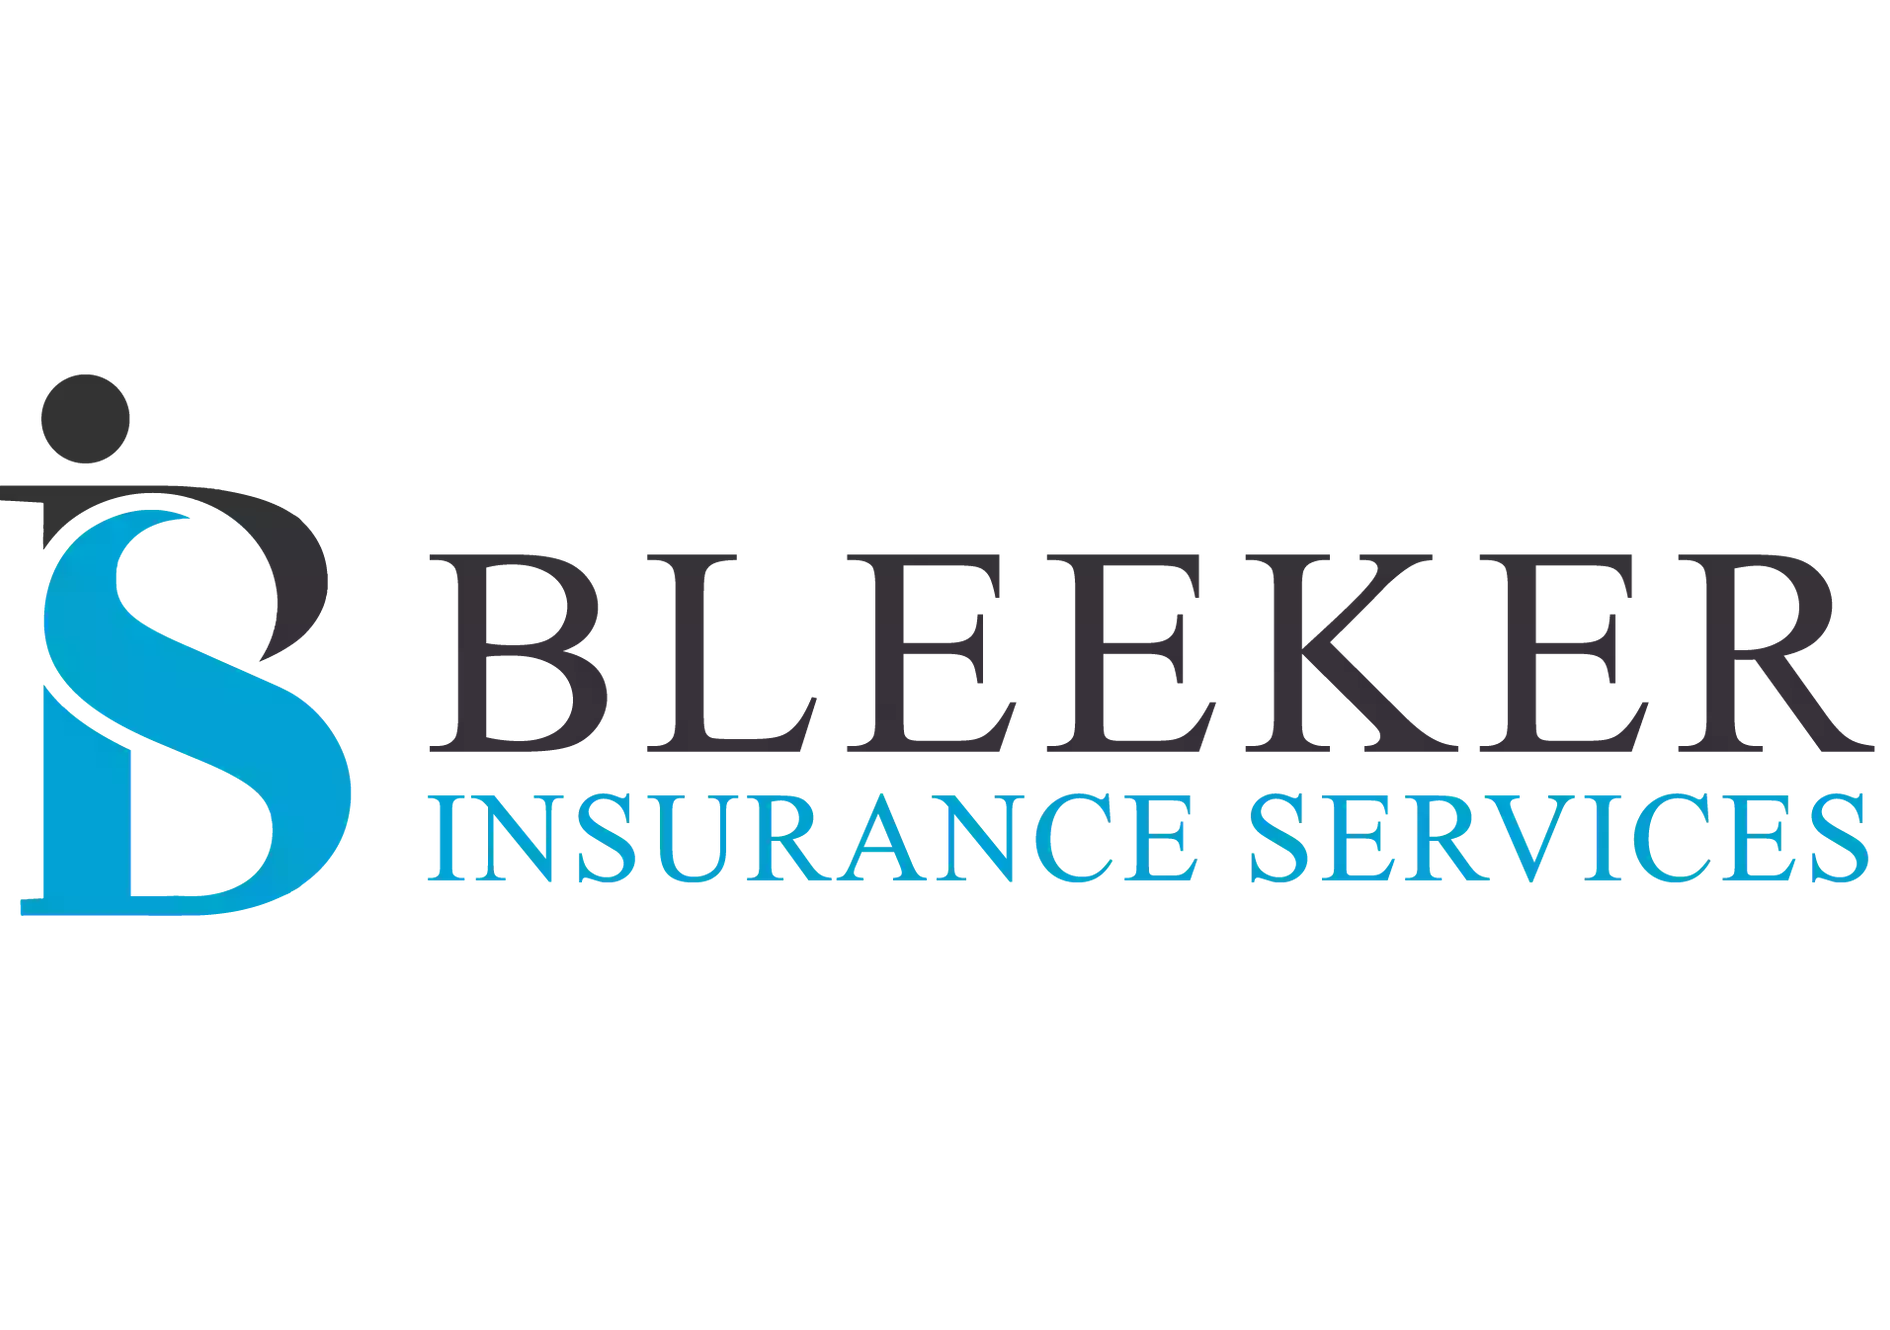 Bleeker Insurance Services